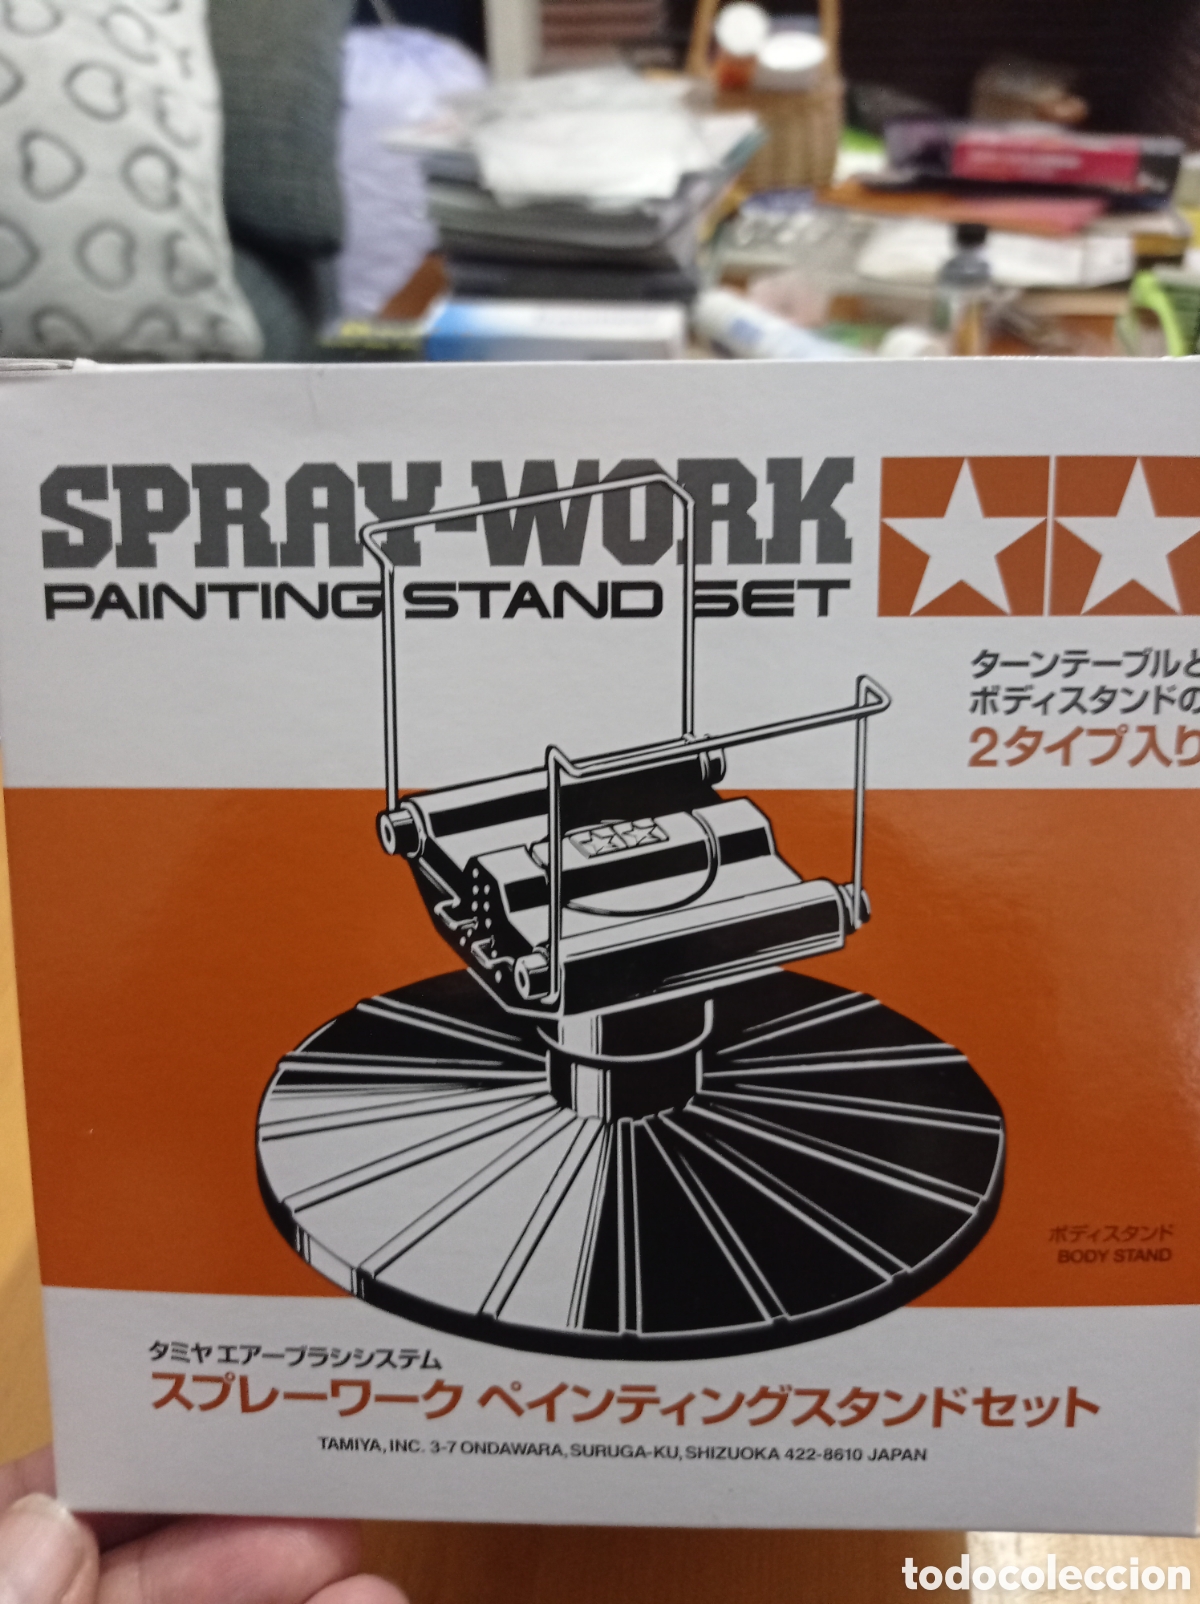 Tamiya - Spray-Work Painting Stand Set